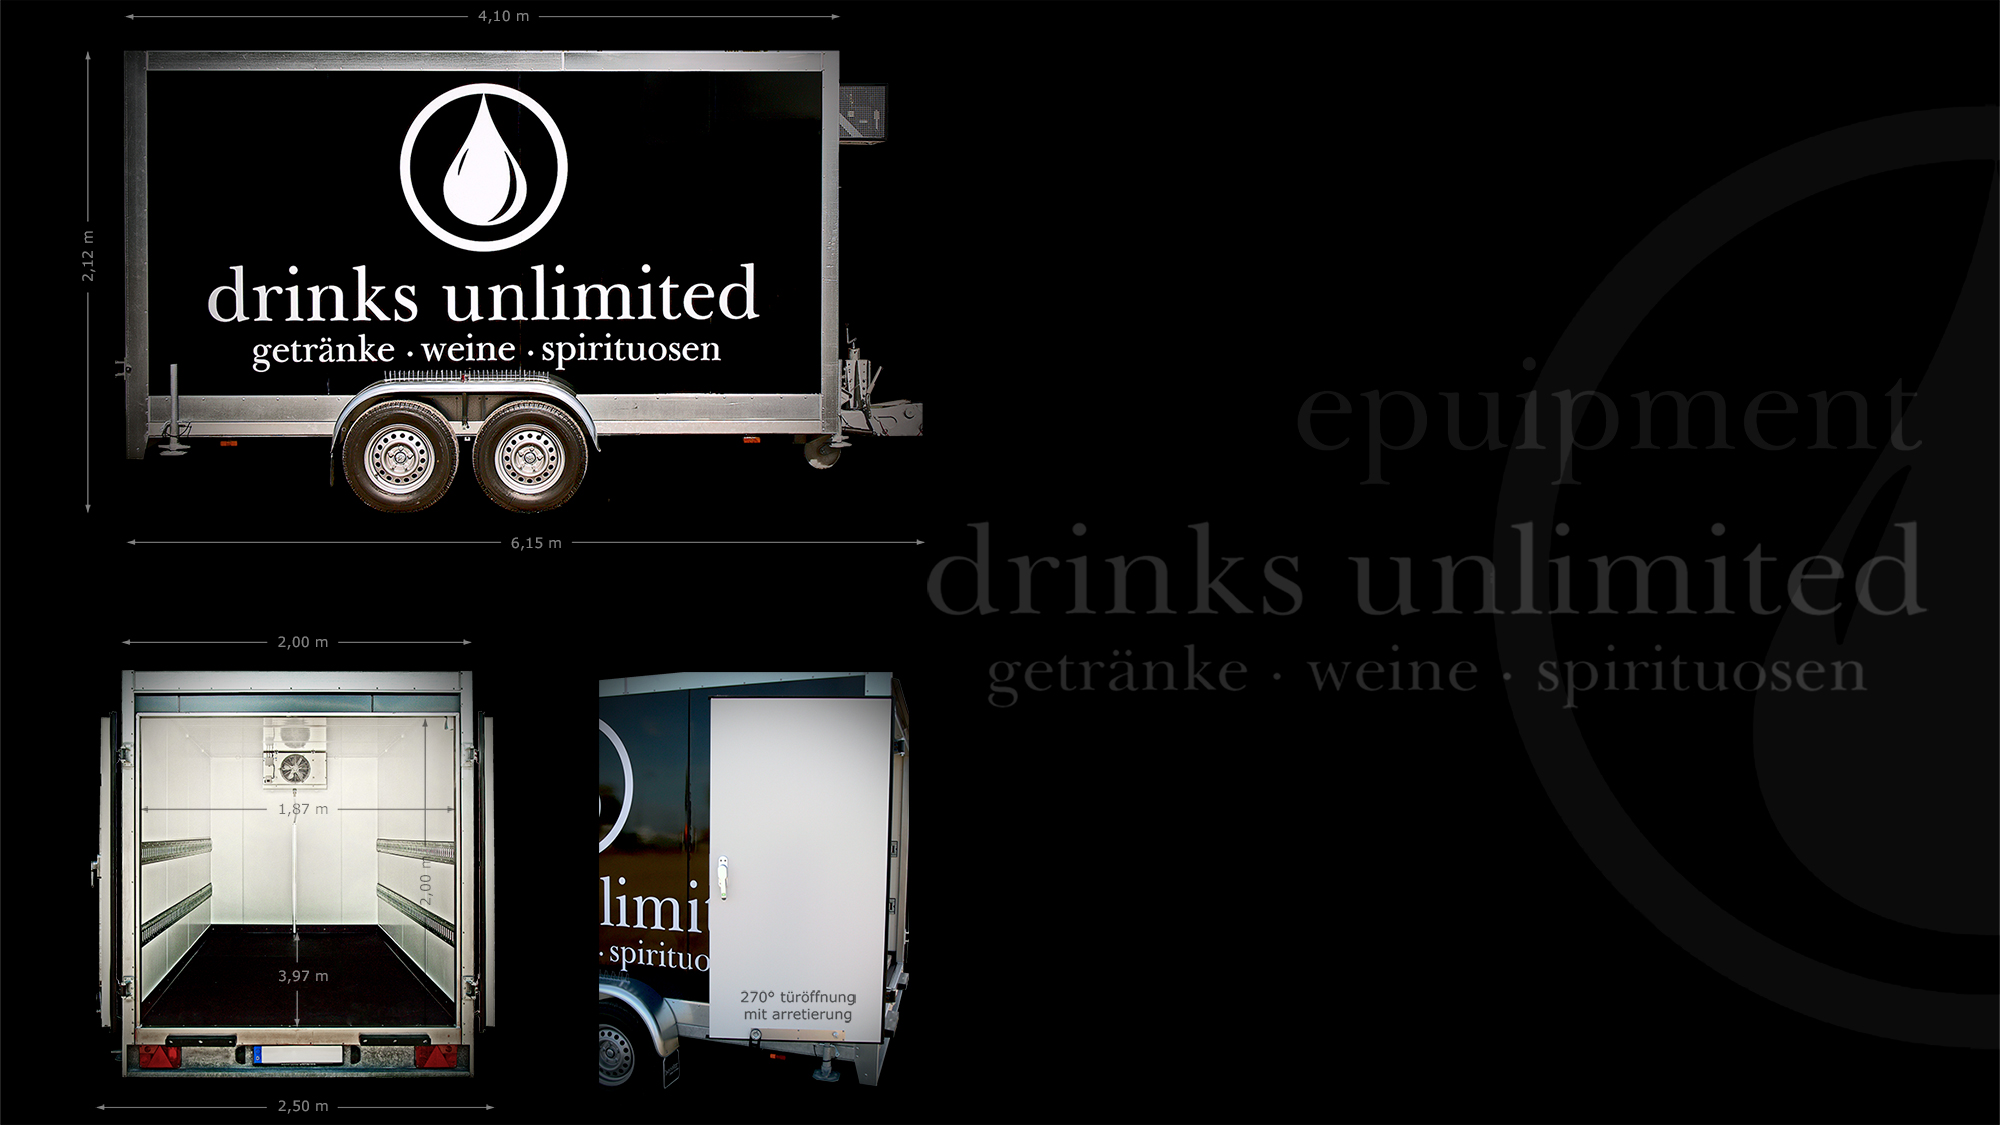 drinks unlimited frankfurt equipment